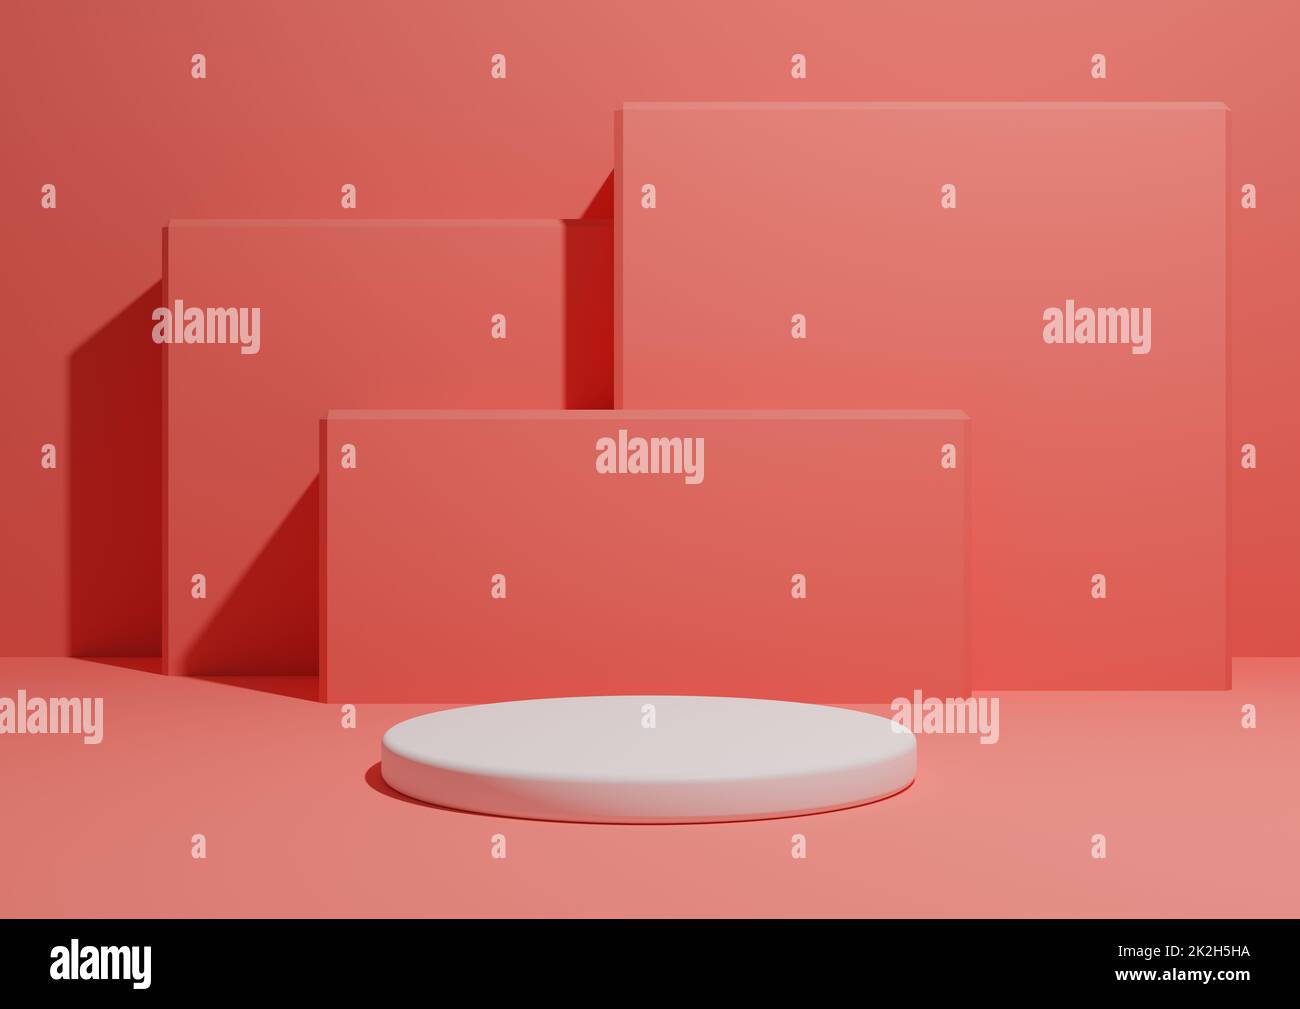 Leuchtendes Neon, lachsfarbenes Rosa, 3D-Darstellung eines einfachen, minimalistischen Hintergrunds mit einem Podium oder Ständer und geometrischen quadratischen Formen im Hintergrund. Stockfoto